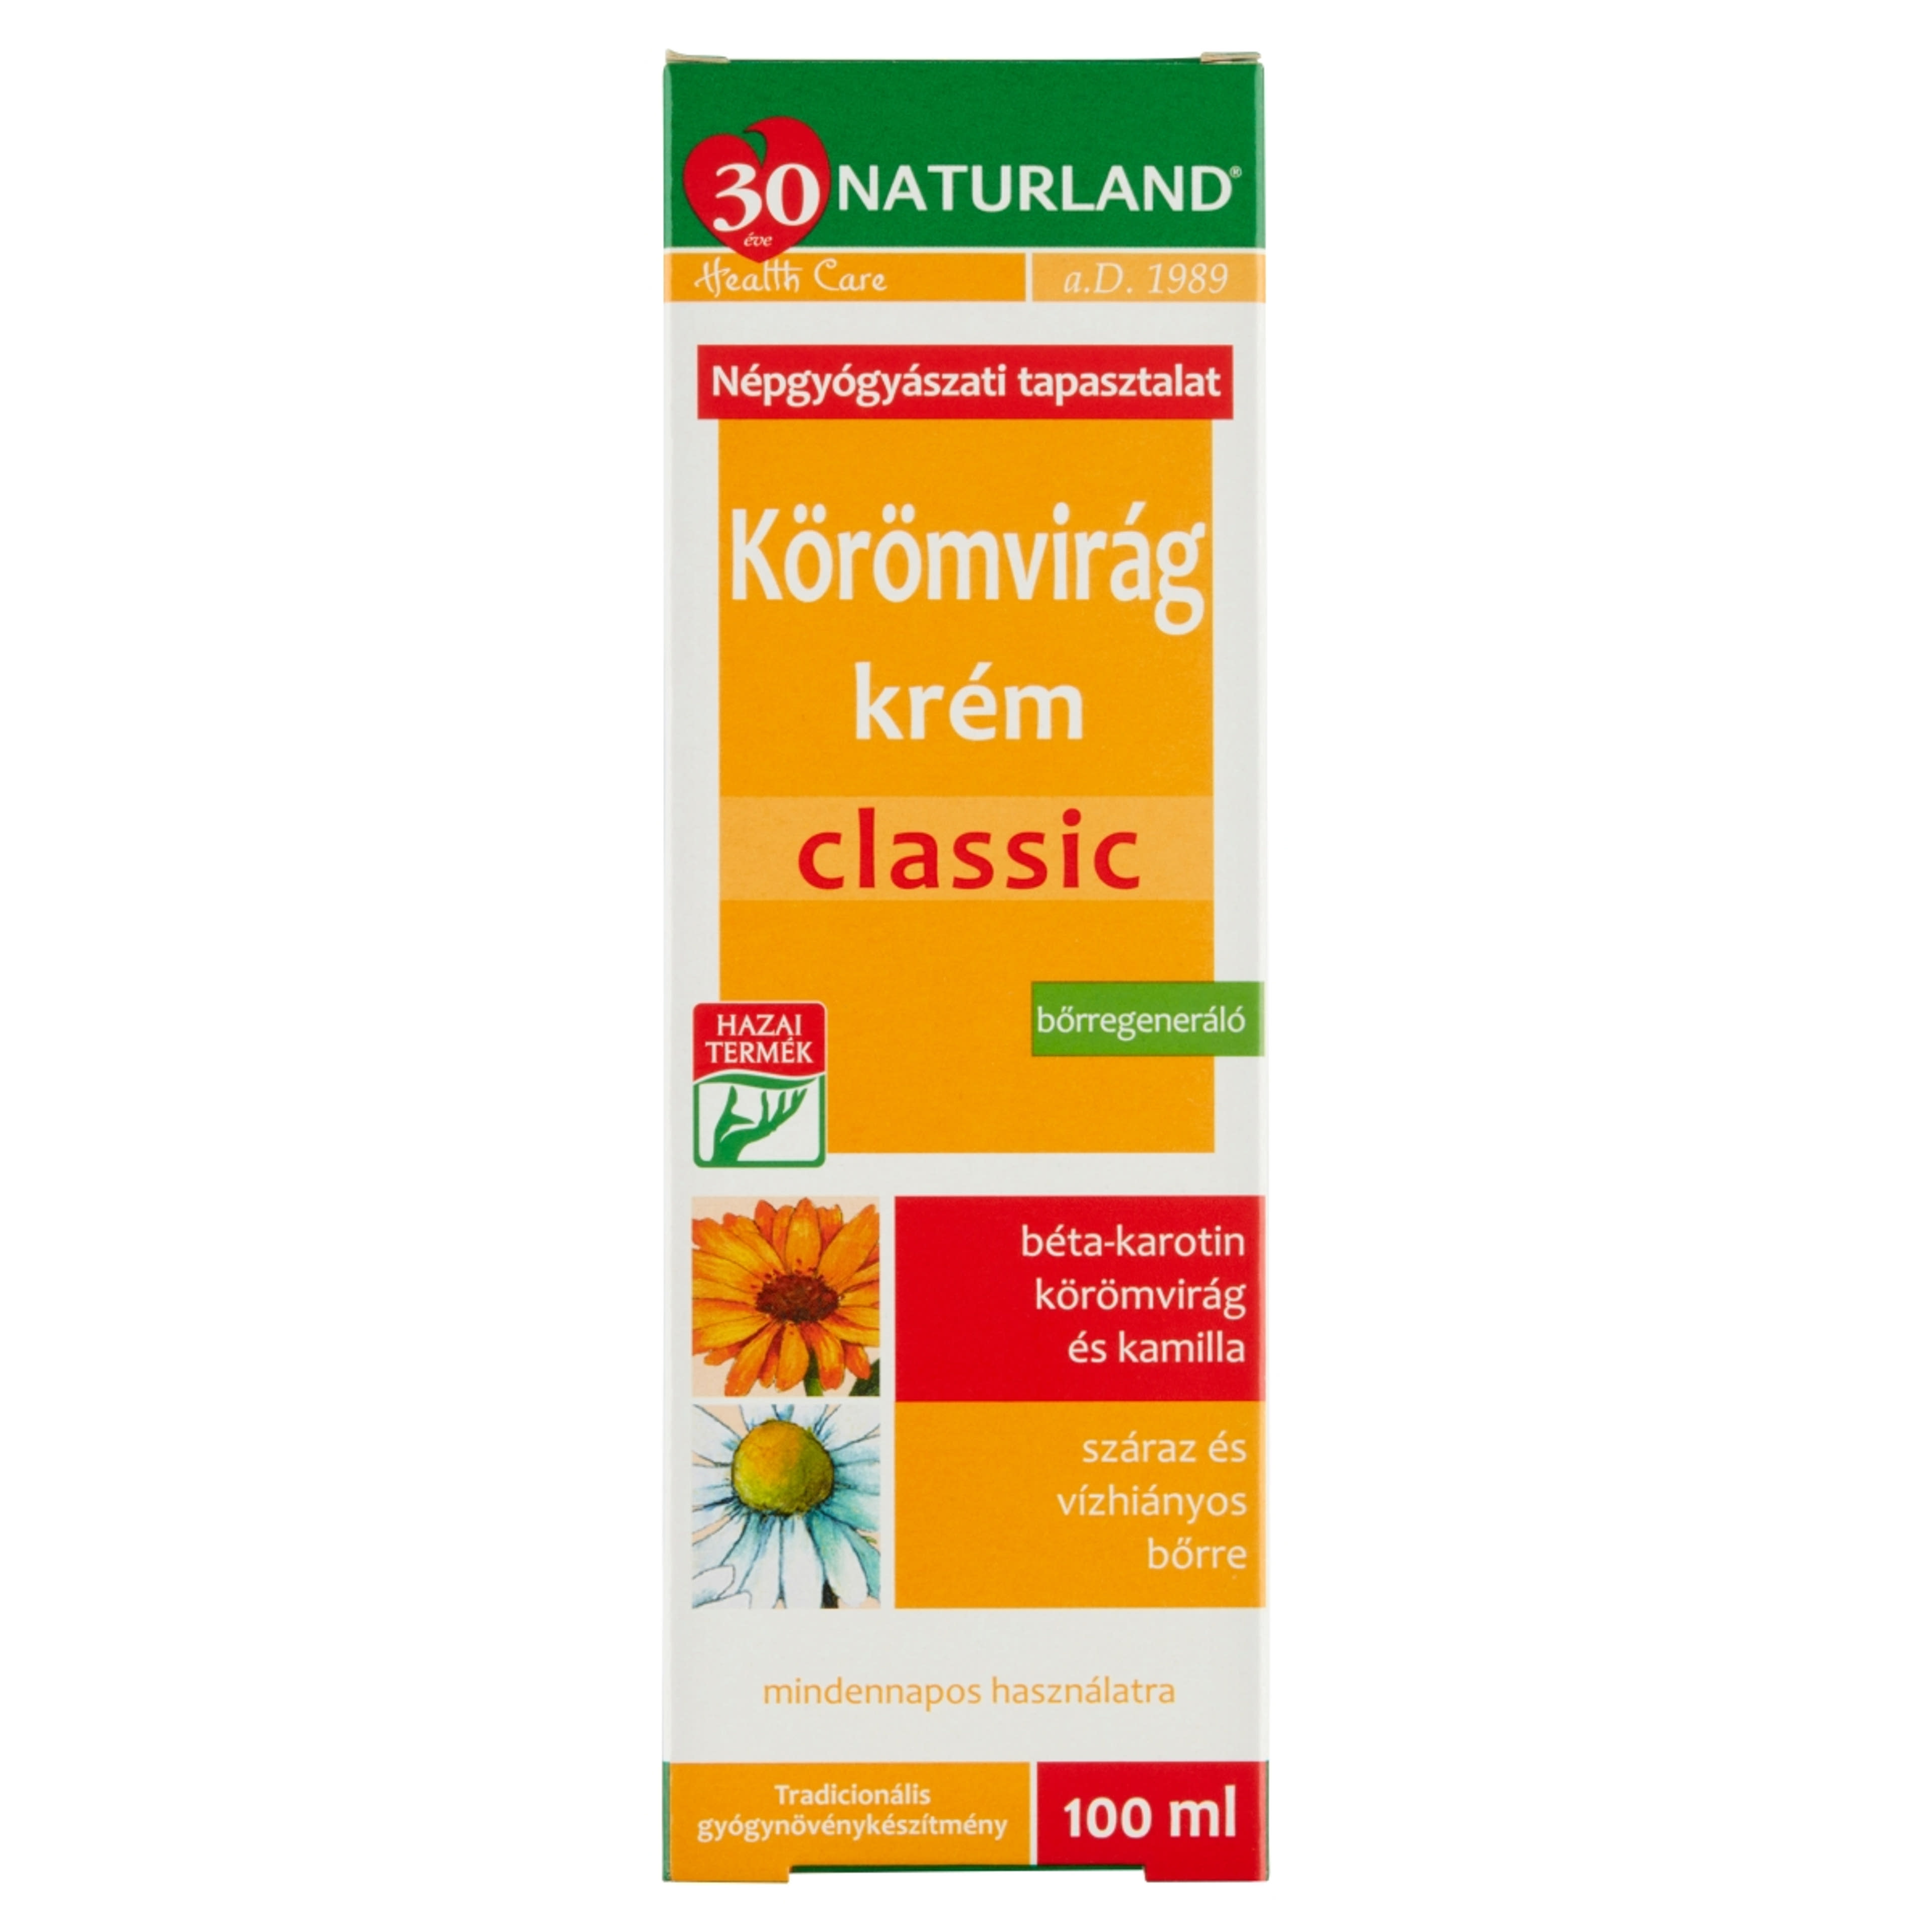 Naturland Classic Körömvirág Krém - 100 ml-1